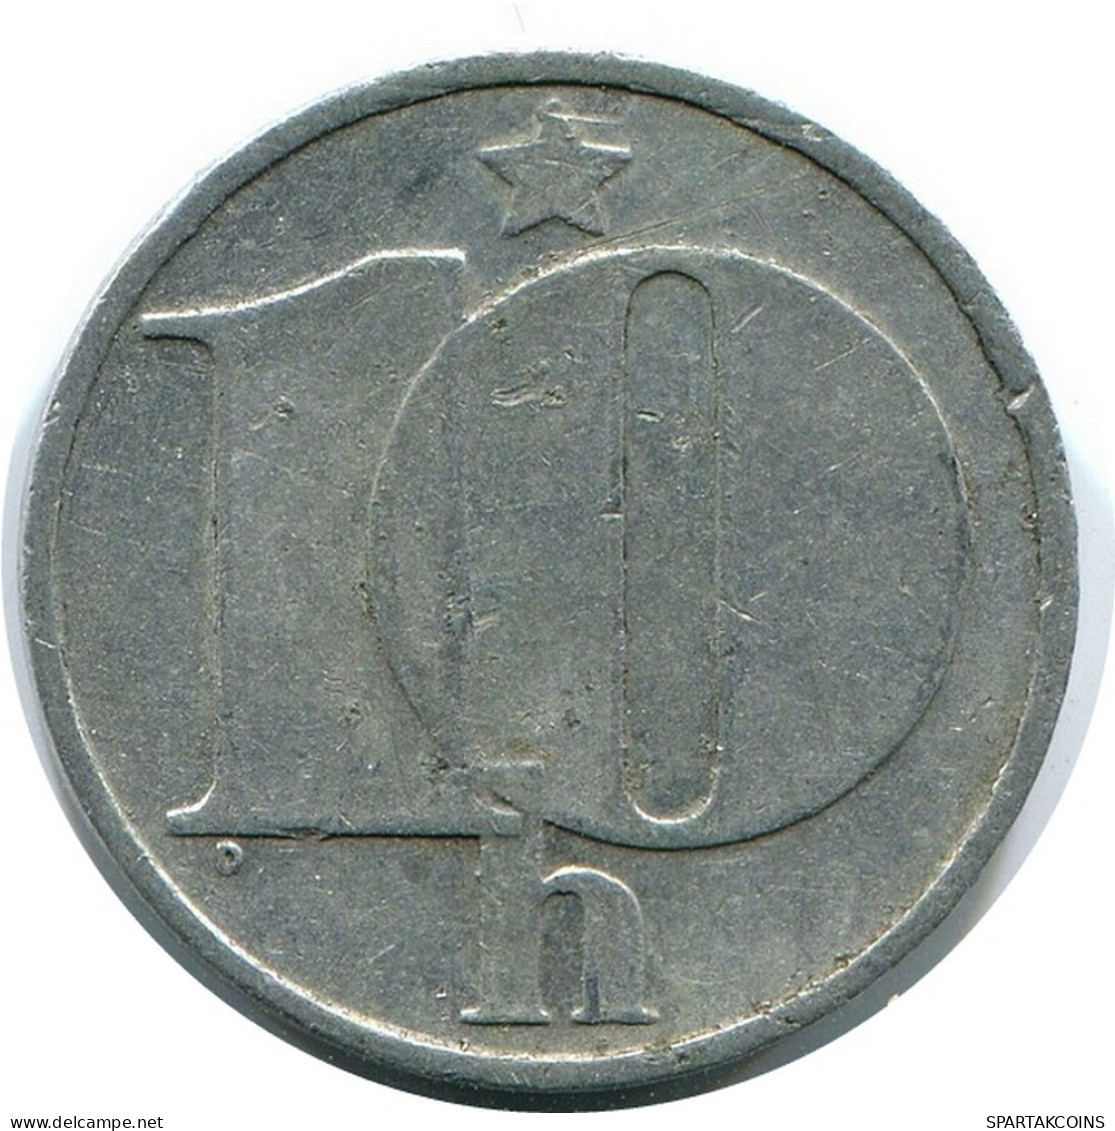 10 HALERU 1976 TSCHECHOSLOWAKEI CZECHOSLOWAKEI SLOVAKIA Münze #AR222.D.A - Czechoslovakia